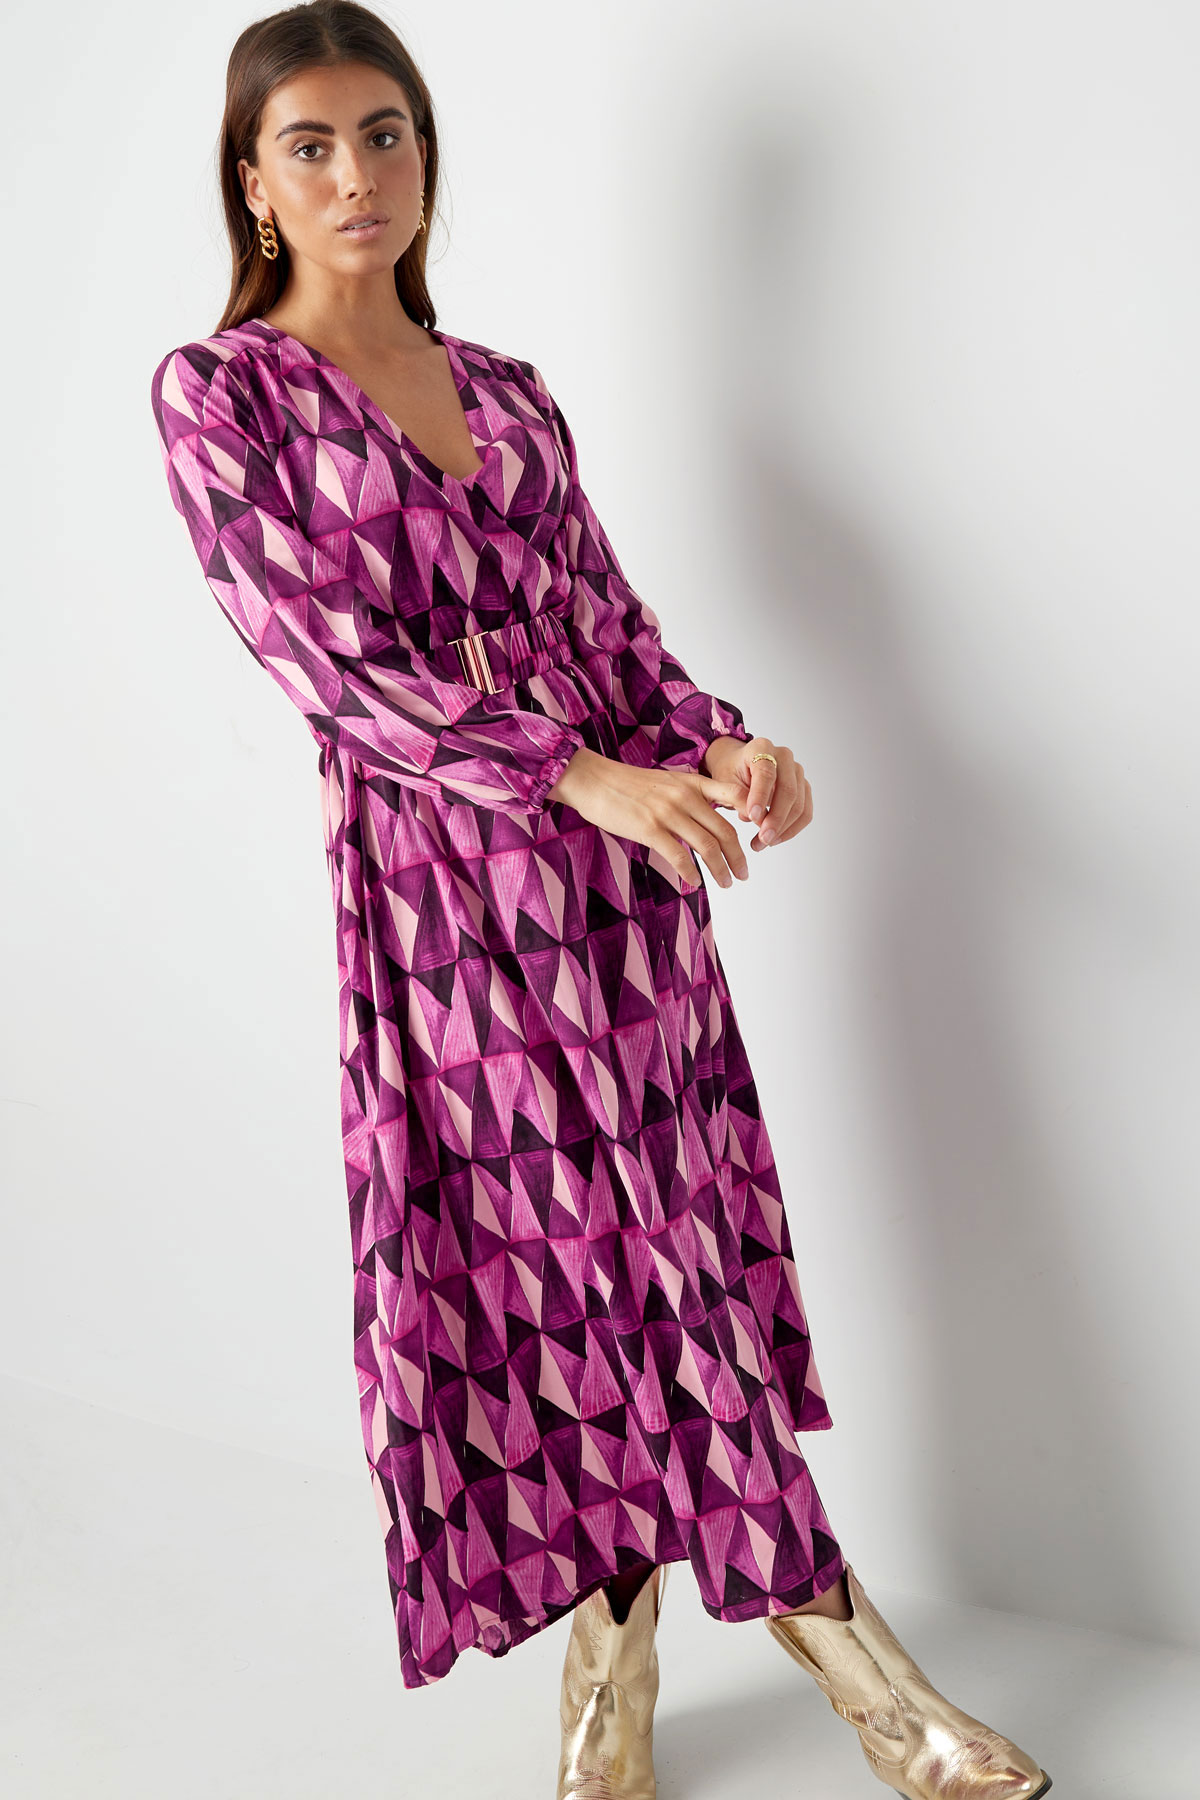 Robe longue imprimé rétro violet rose h5 Image5